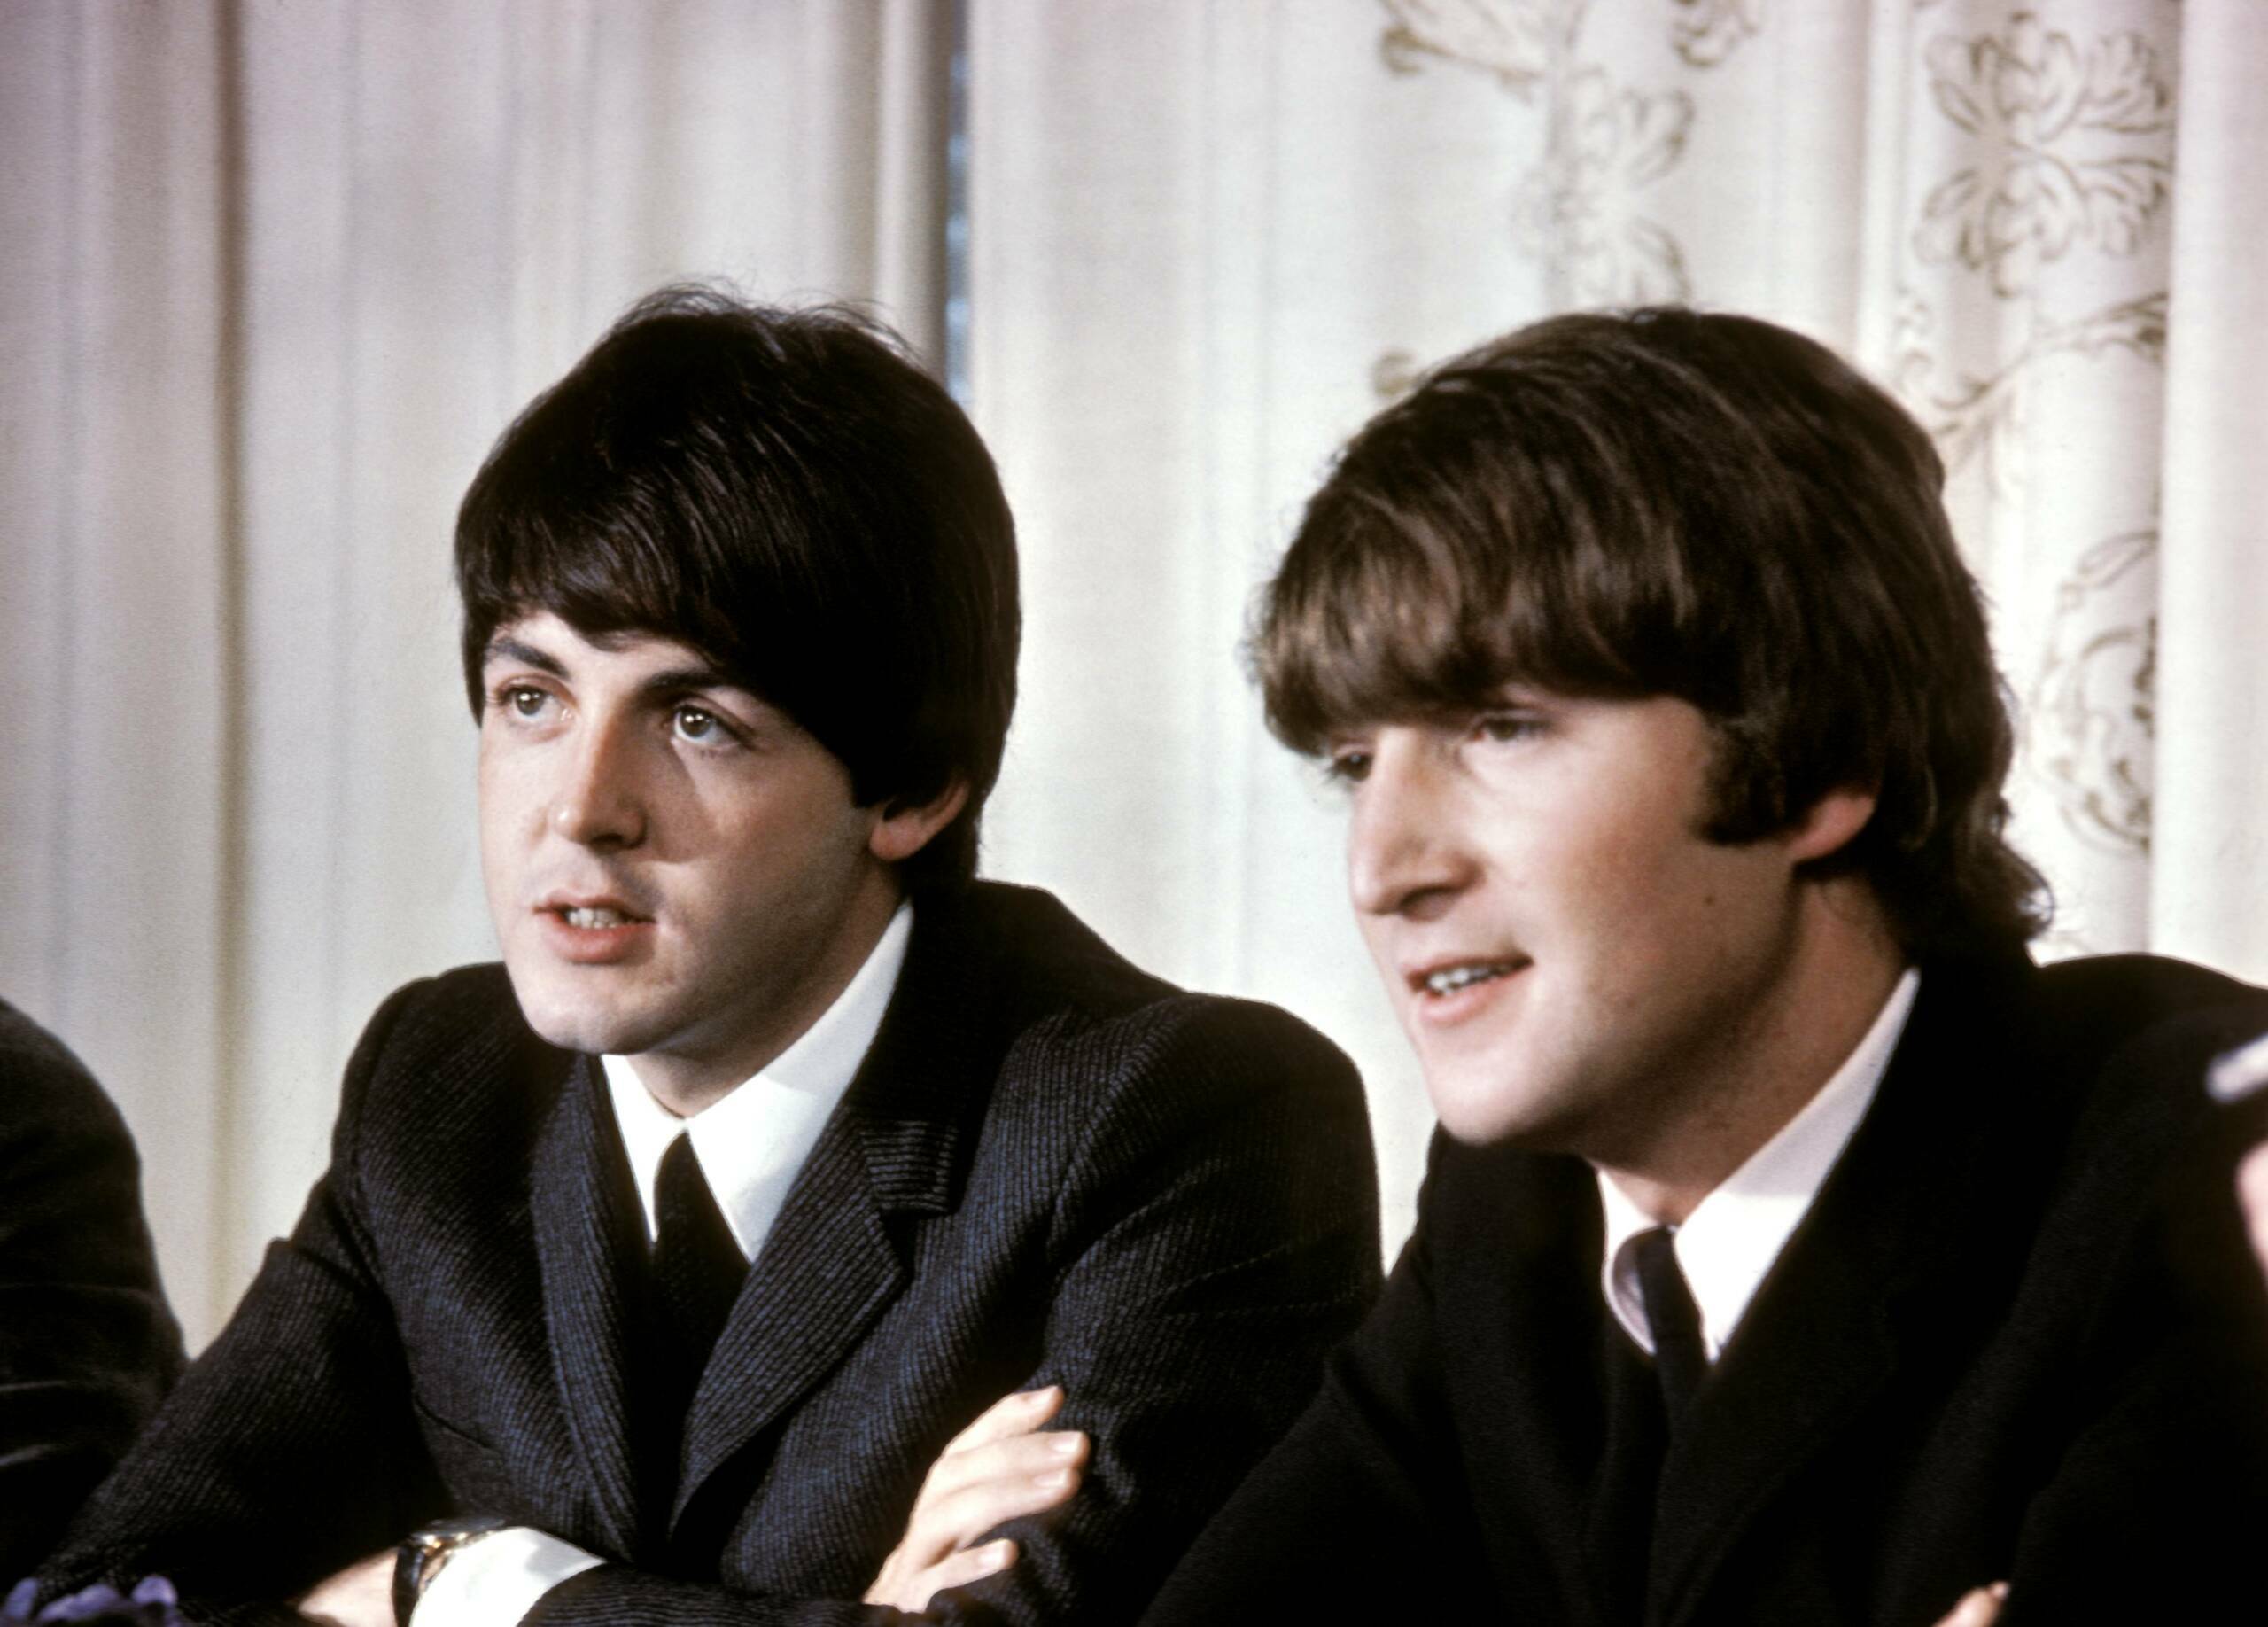 Paul McCartney und John Lennon